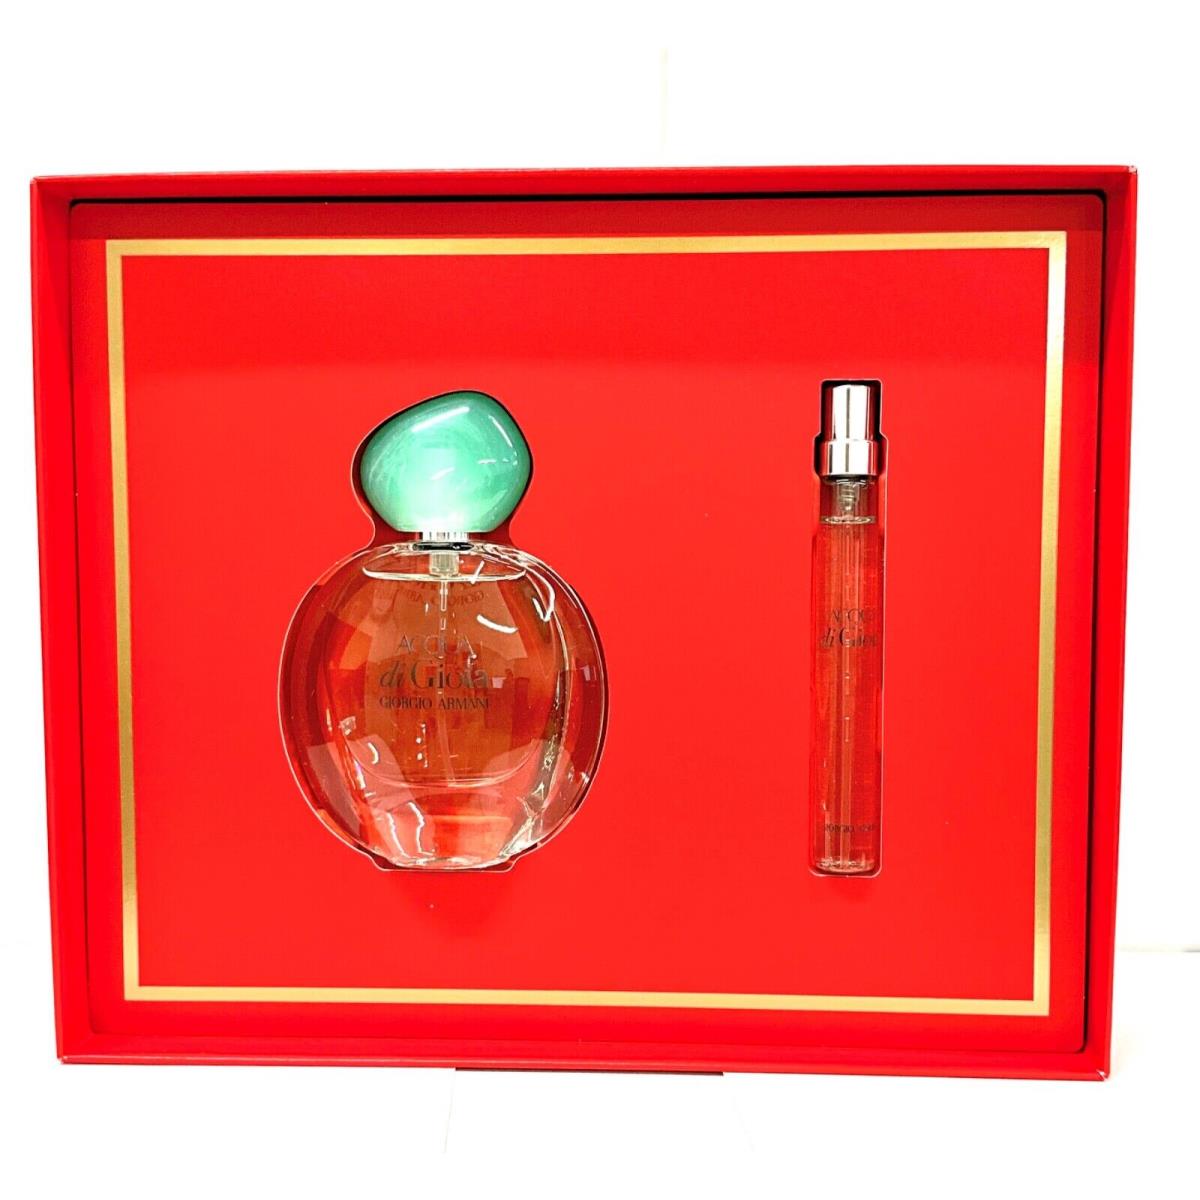 Giorgio Armani - Acqua di Gioia Eau de Parfum Spray - Gift Set 1 oz 0.34 oz